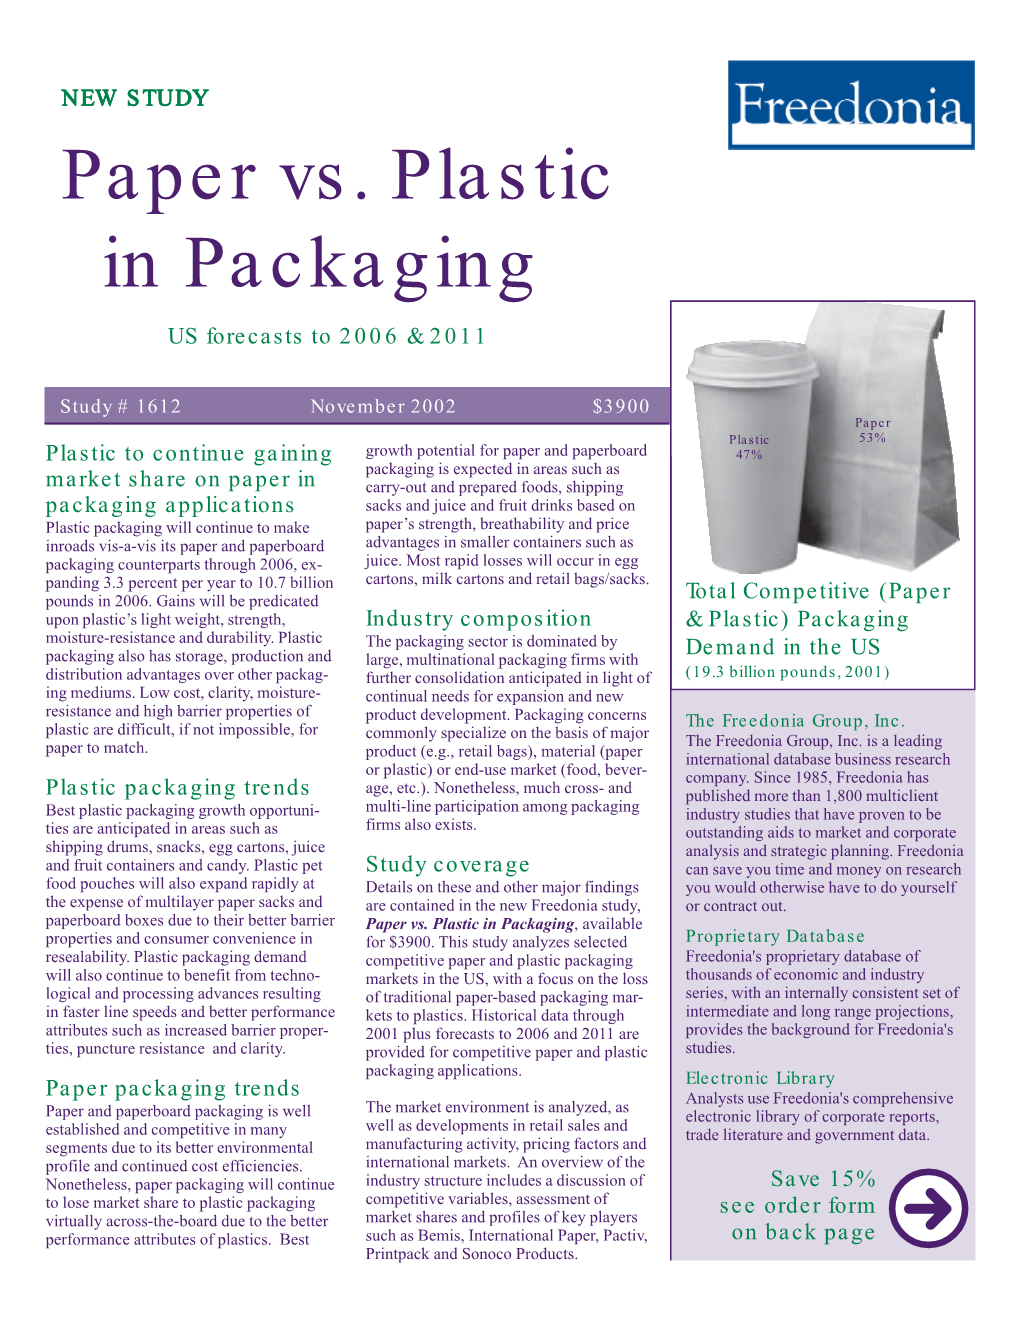 Paper Vs. Plastic in Packaging